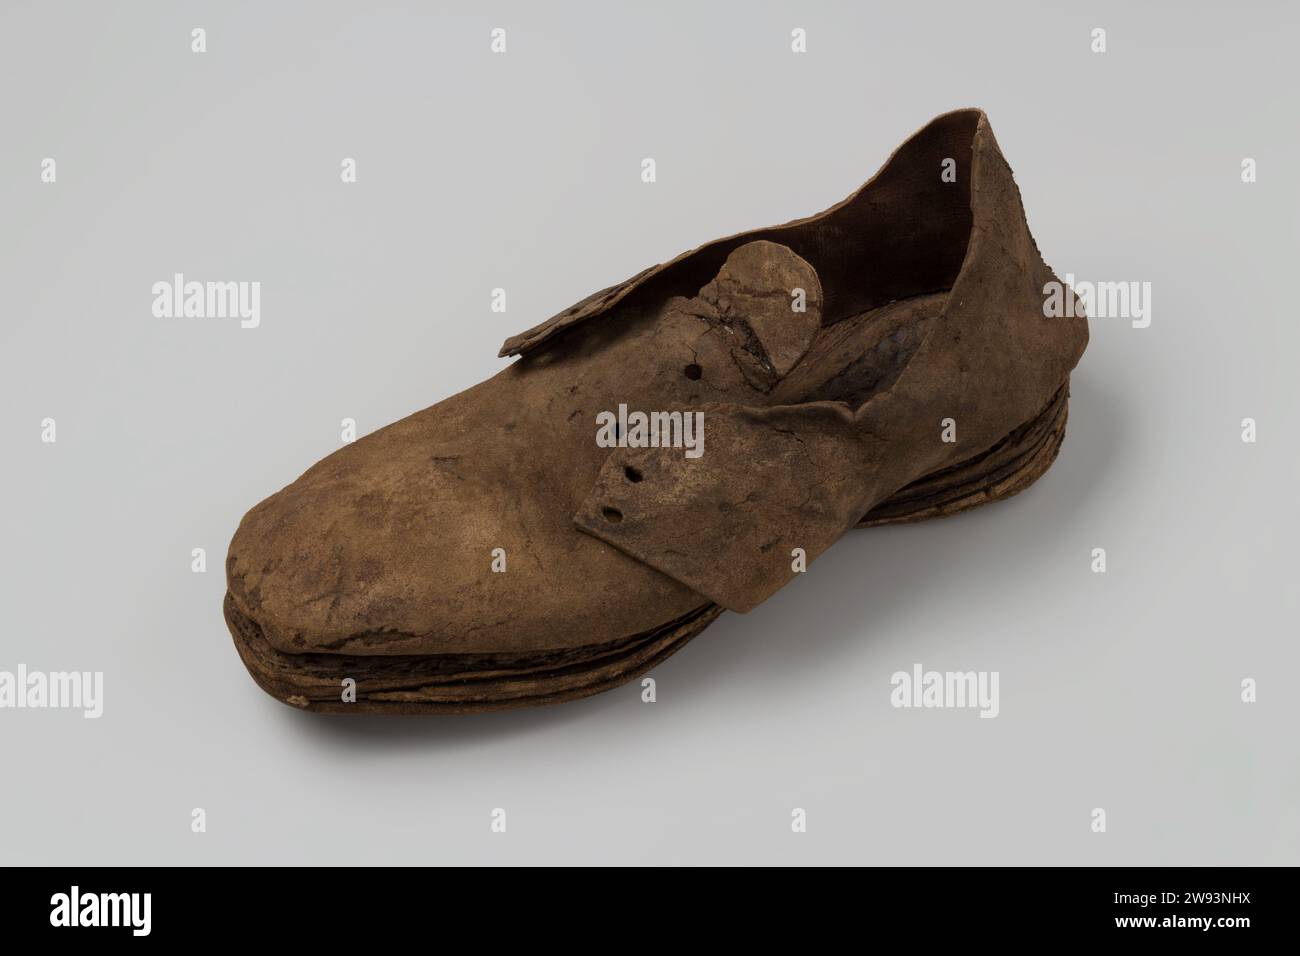 Scarpa in pelle, c. 1400 - c. 1950 scarpa in pelle, pizzo mancante. Pelle Zeeuwsche Uytkyck Foto Stock